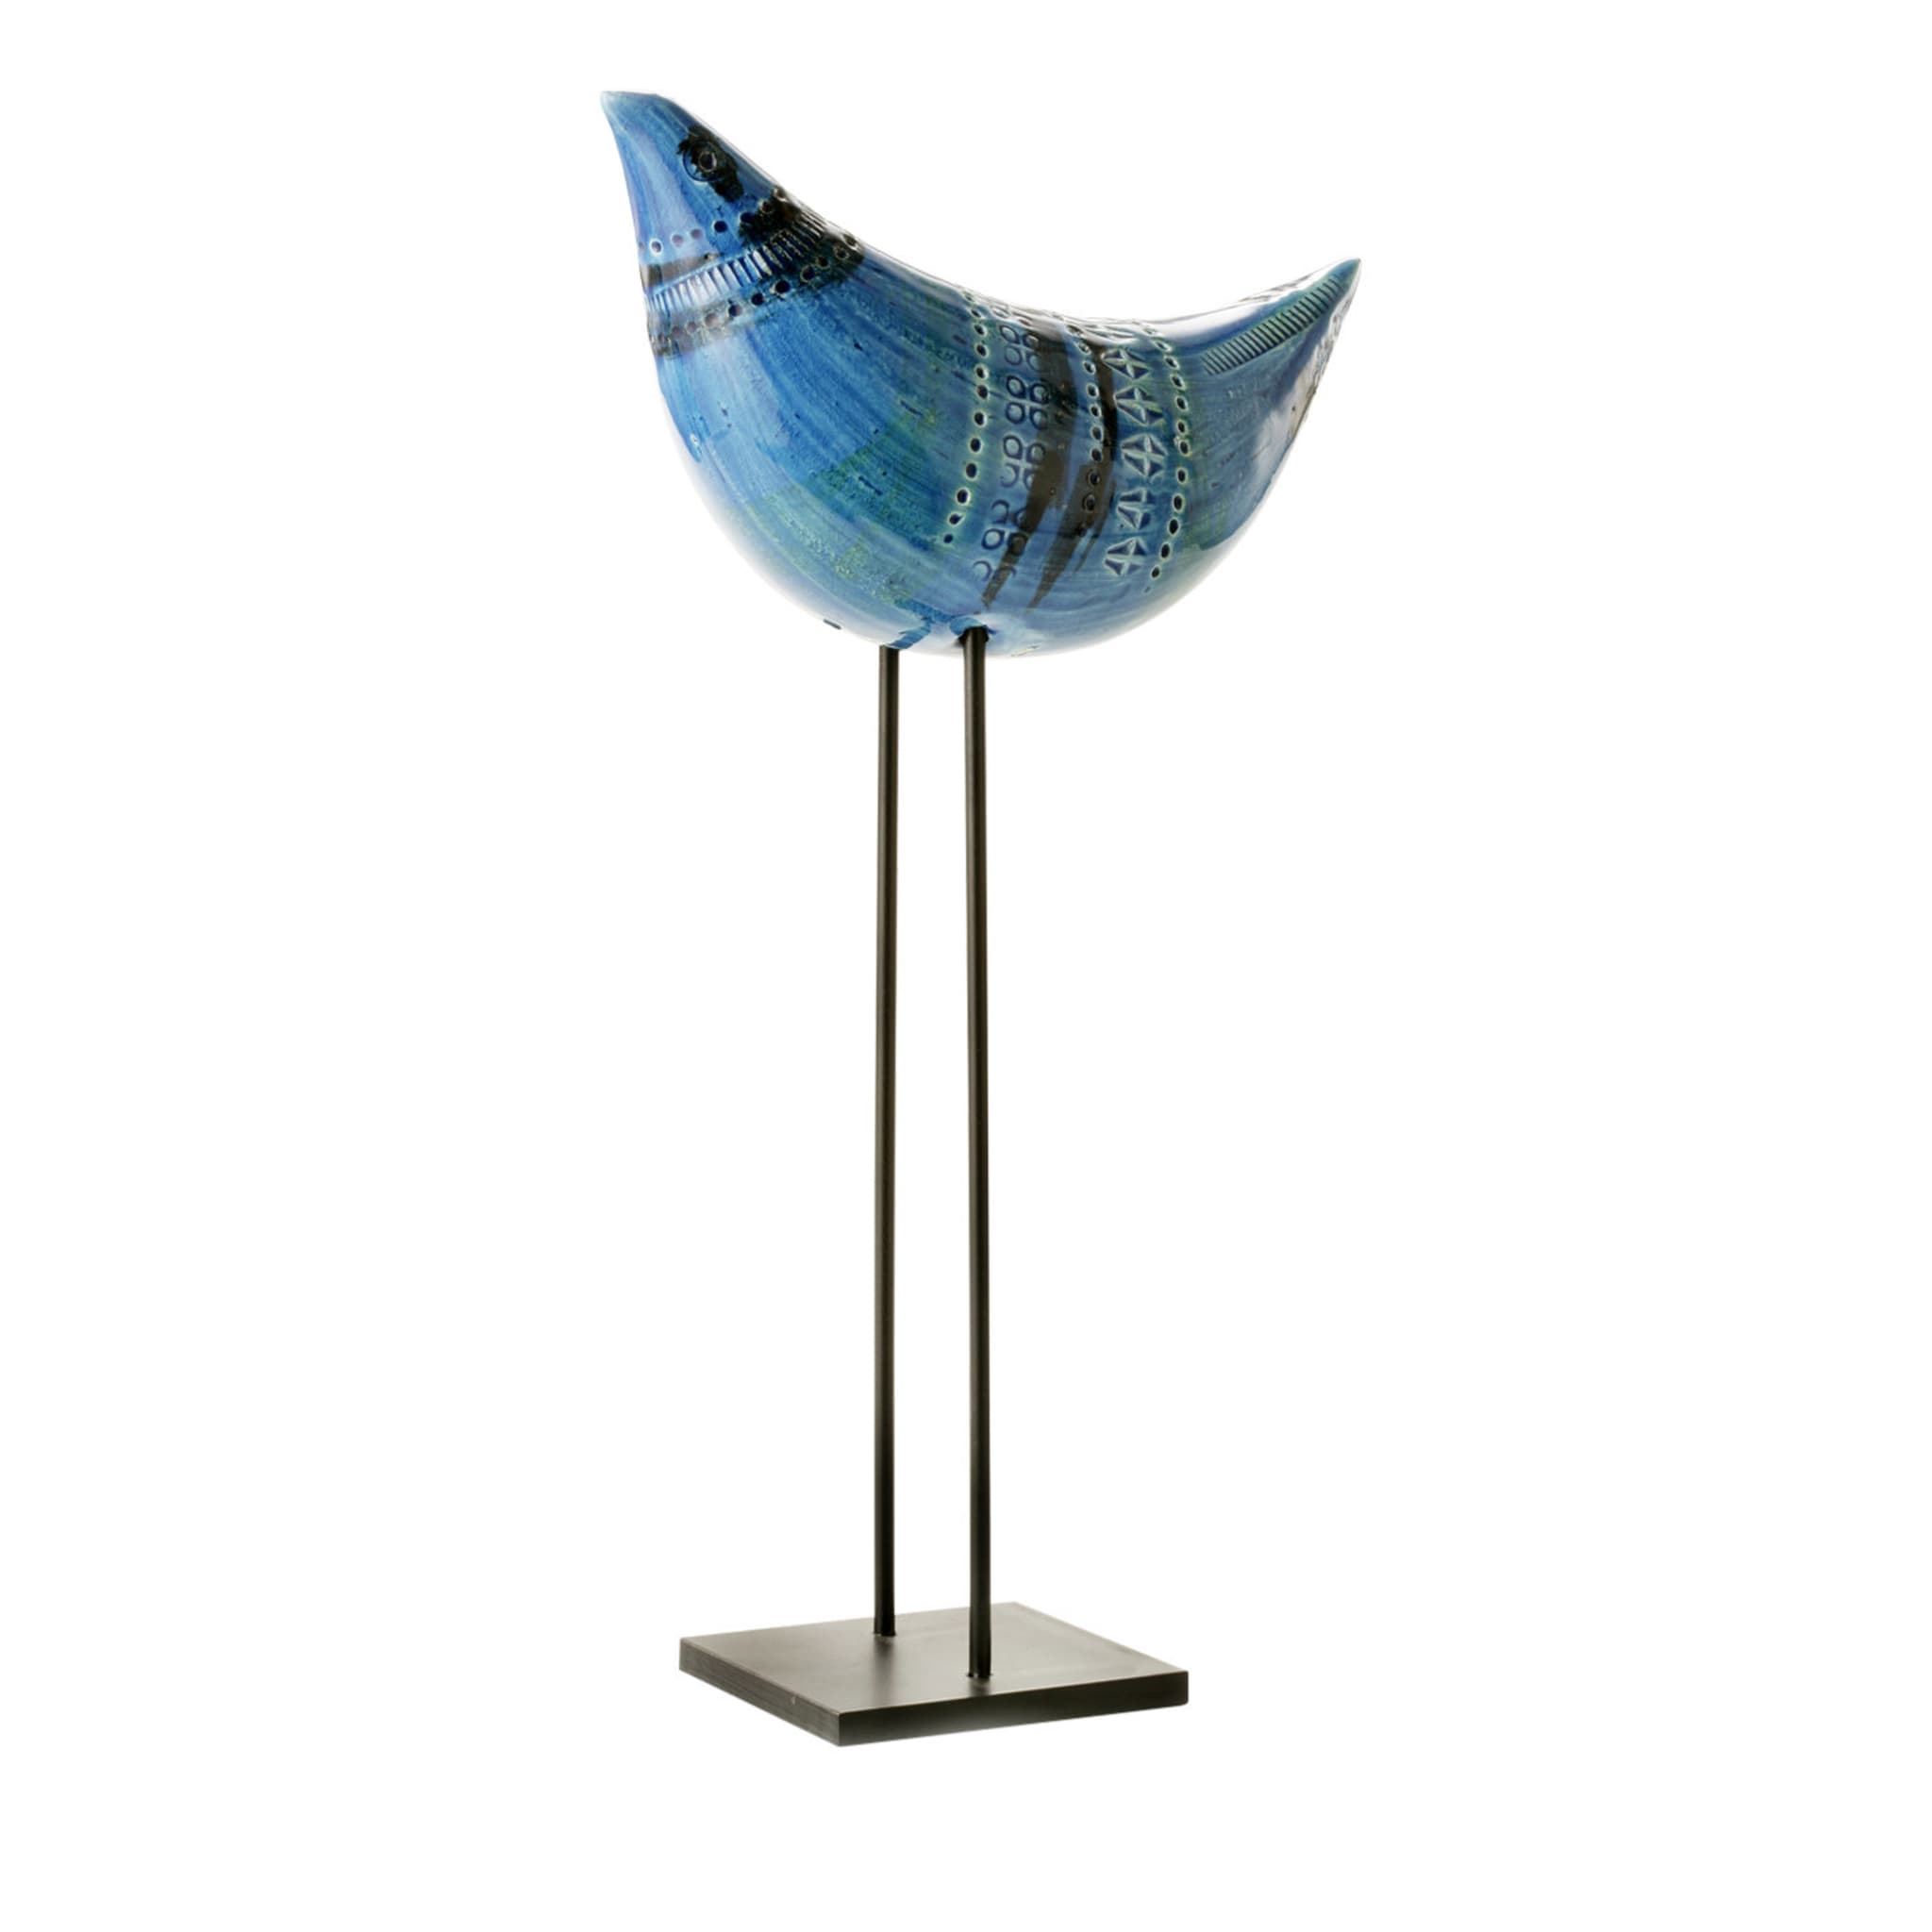 Sculpture de l'oiseau bleu par Aldo Londi - Vue principale